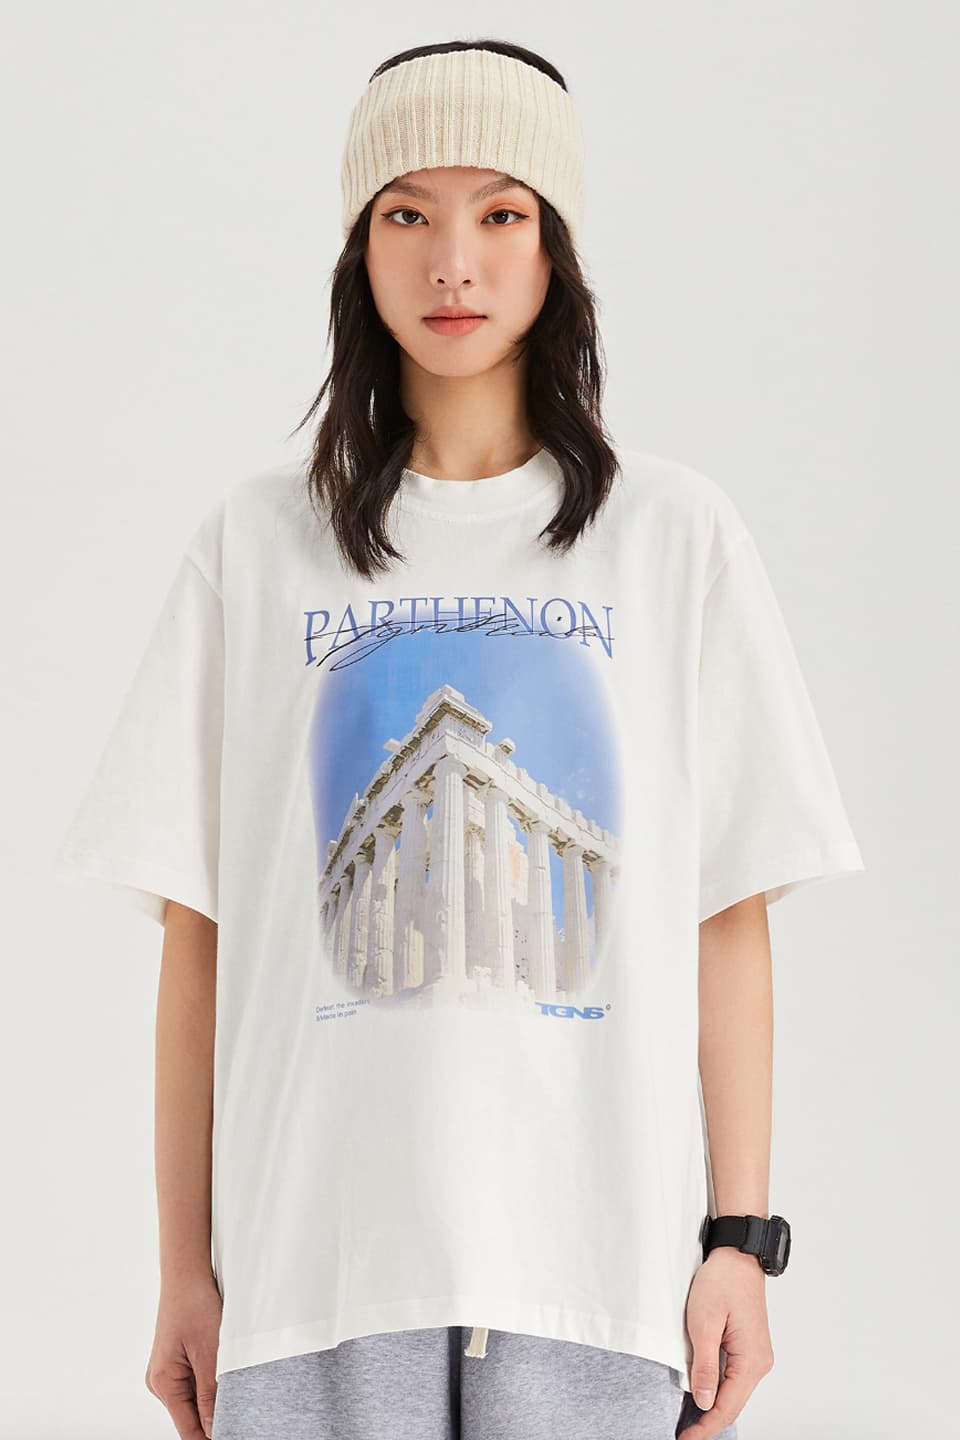 Parthenon Tee